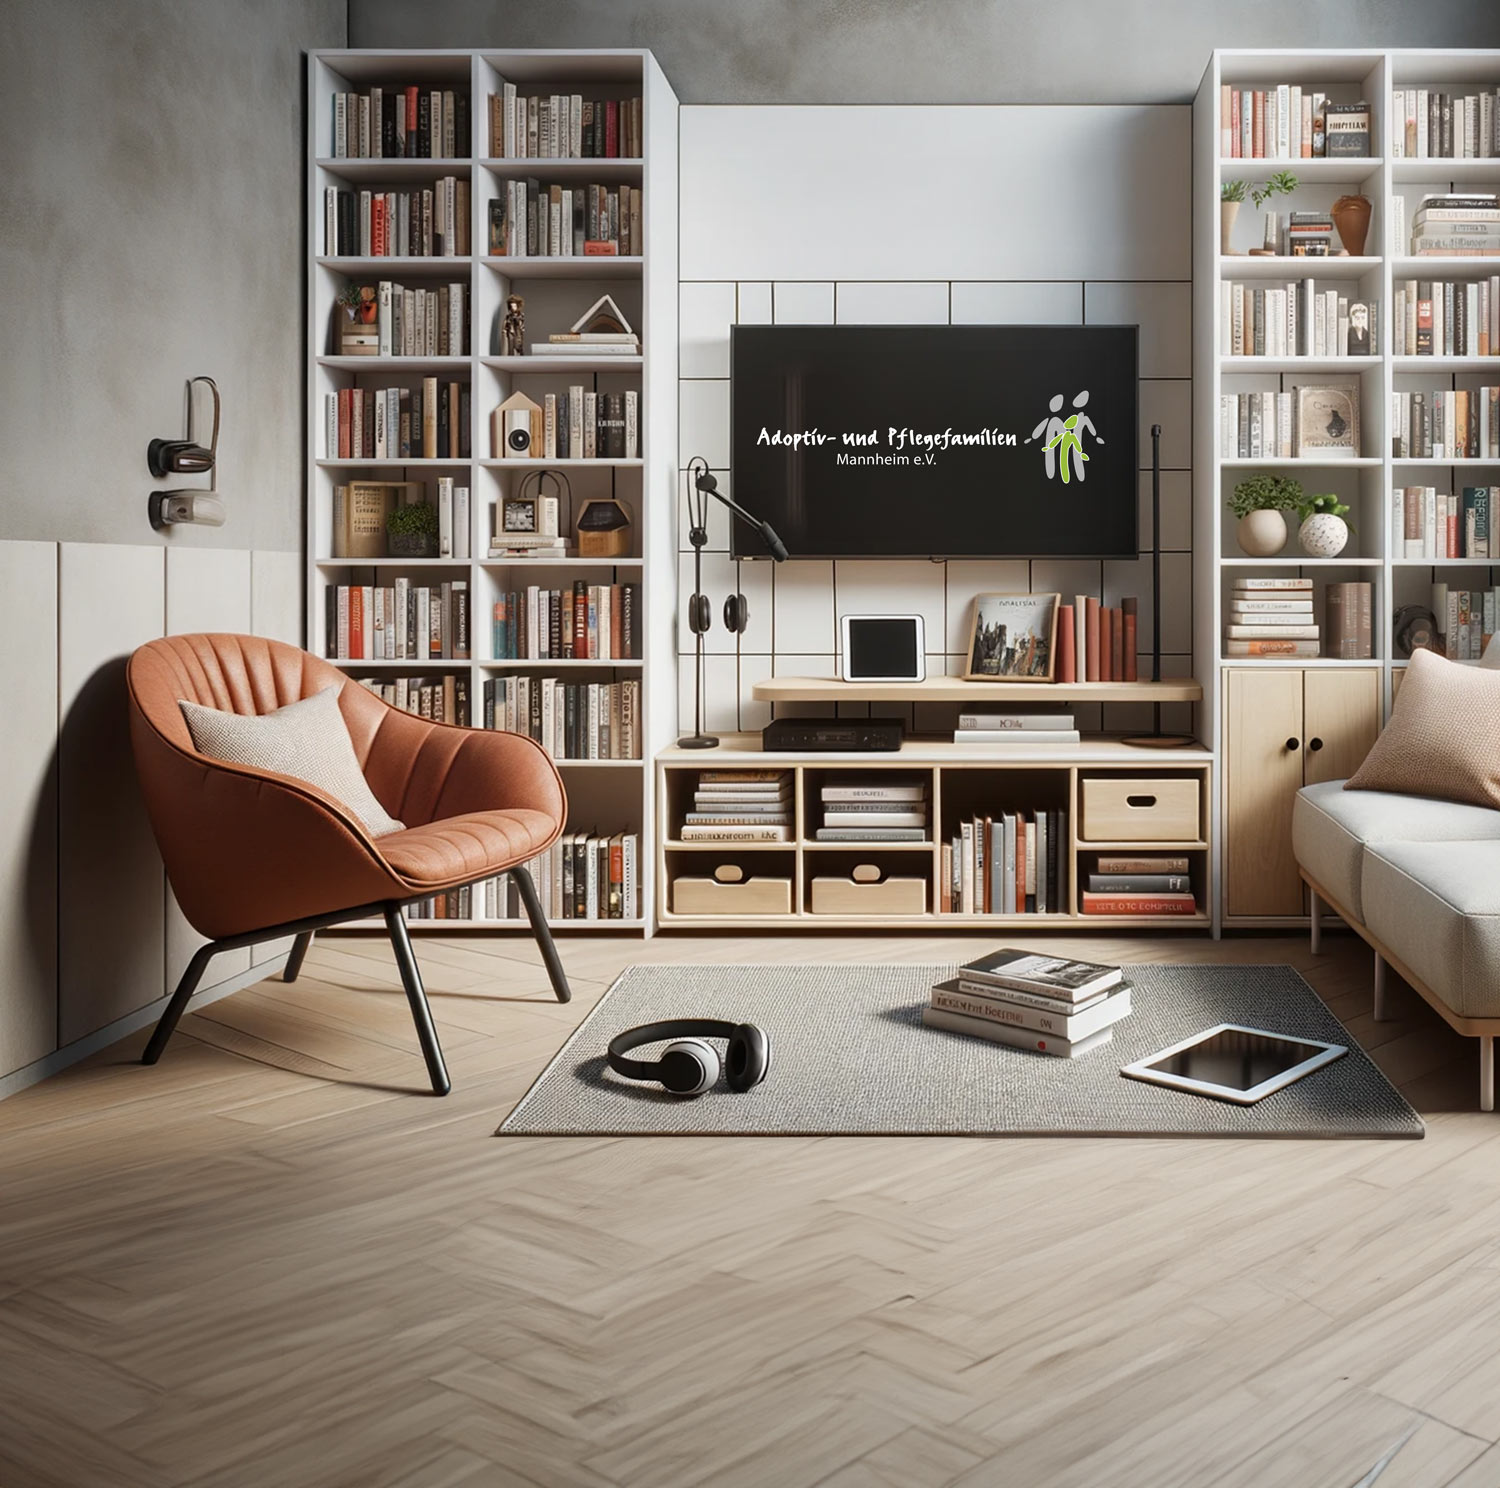 Modernes Wohnzimmer mit Bücherregalen und Fernseher.